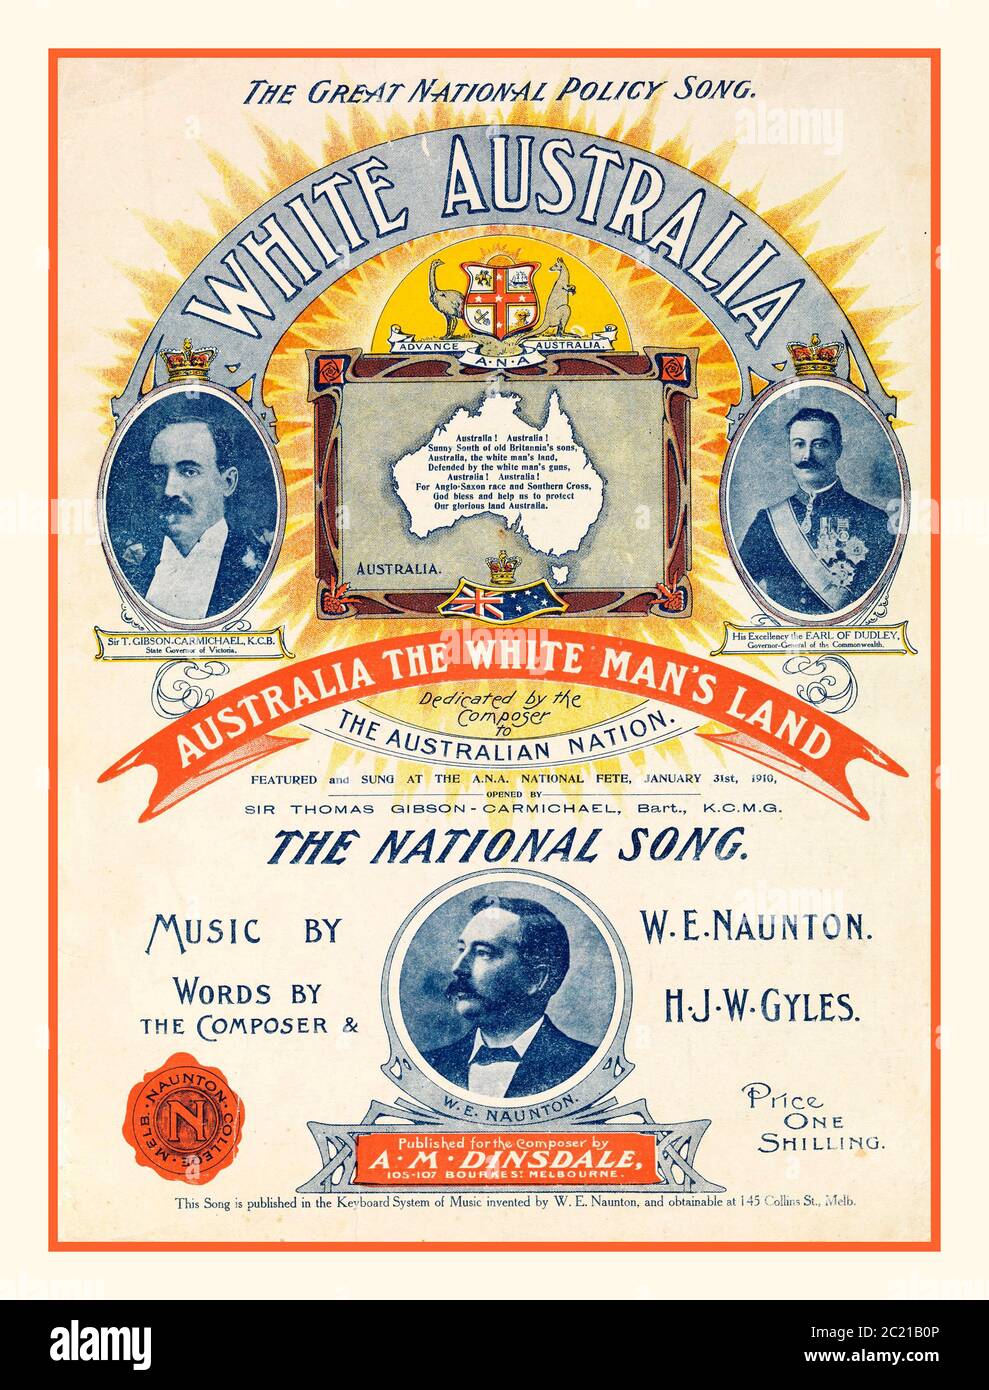 Copertina di spartiti razzisti anti-aborigeni (Australia, circa 1910) Spartiti per la canzone 'White Australia', composta da W.E. Naunton con parole di Naunton e H.J.W. Gyles, e ha suonato presso la Australian Natives' Association National Fete, 31 gennaio 1910. I motivi della spartiti includono una mappa bianca dell'Australia. Naunton era un compositore prolifico che scrisse musica per molte canzoni relative al nazionalismo australiano e ad altri soggetti. "Un popolo, un destino, una nazione" - "una bandiera, una lingua, una destinazione del popolo. Australia la terra dell'uomo bianco, / difesa dalle pistole dell'uomo bianco Foto Stock